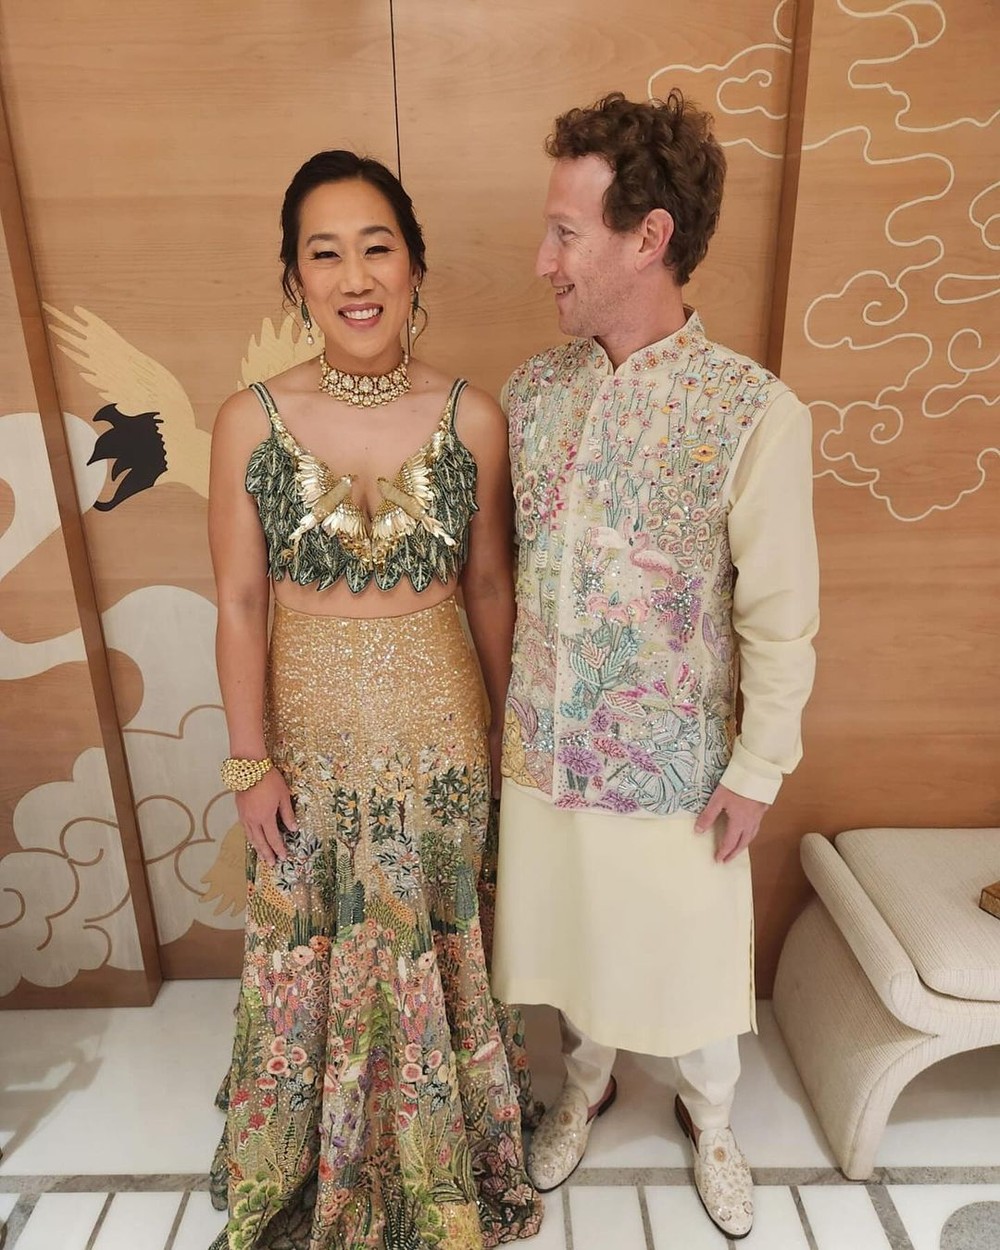 Ở một không gian tiệc cưới khác, Zuckerberg và vợ đều diện bộ trang phục của nhà thiết kế Ấn Độ Rahul Mishra. Priscilla Chan khoác lên mình thiết kế 2 mảnh được trang trí theo chủ đề thiên nhiên, có giá 18.799 USD (khoảng 452 triệu đồng). Trang phục của Zuckerberg được mô phỏng theo chủ đề động vật hoang dã với hoa, tán lá, có giá hơn 7.000 USD (khoảng 170 triệu đồng).